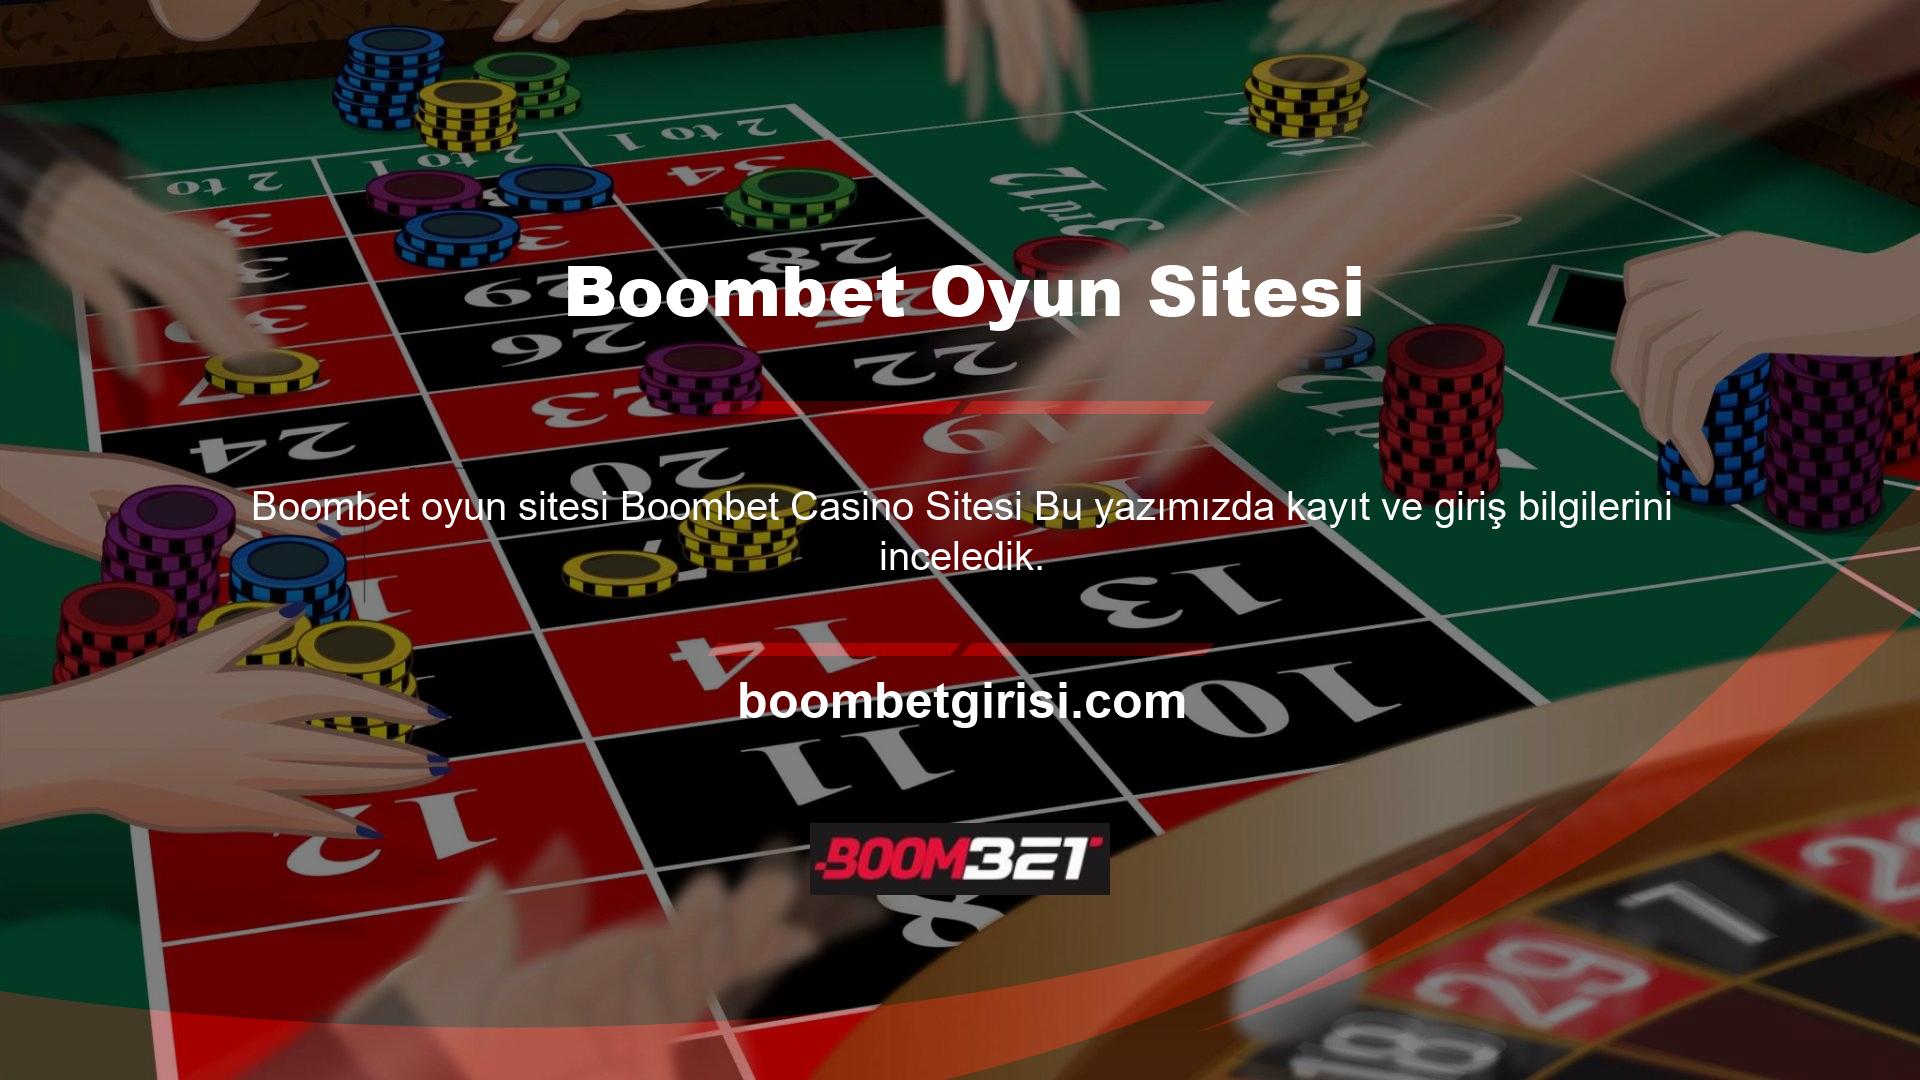 Türkiye'nin yeni Boombet oyun sitesi  bahis platformuna girdiğinizde, çok sayıda bahis kuponunu güvenli bir şekilde hazırlamak için istisnalar bulacaksınız